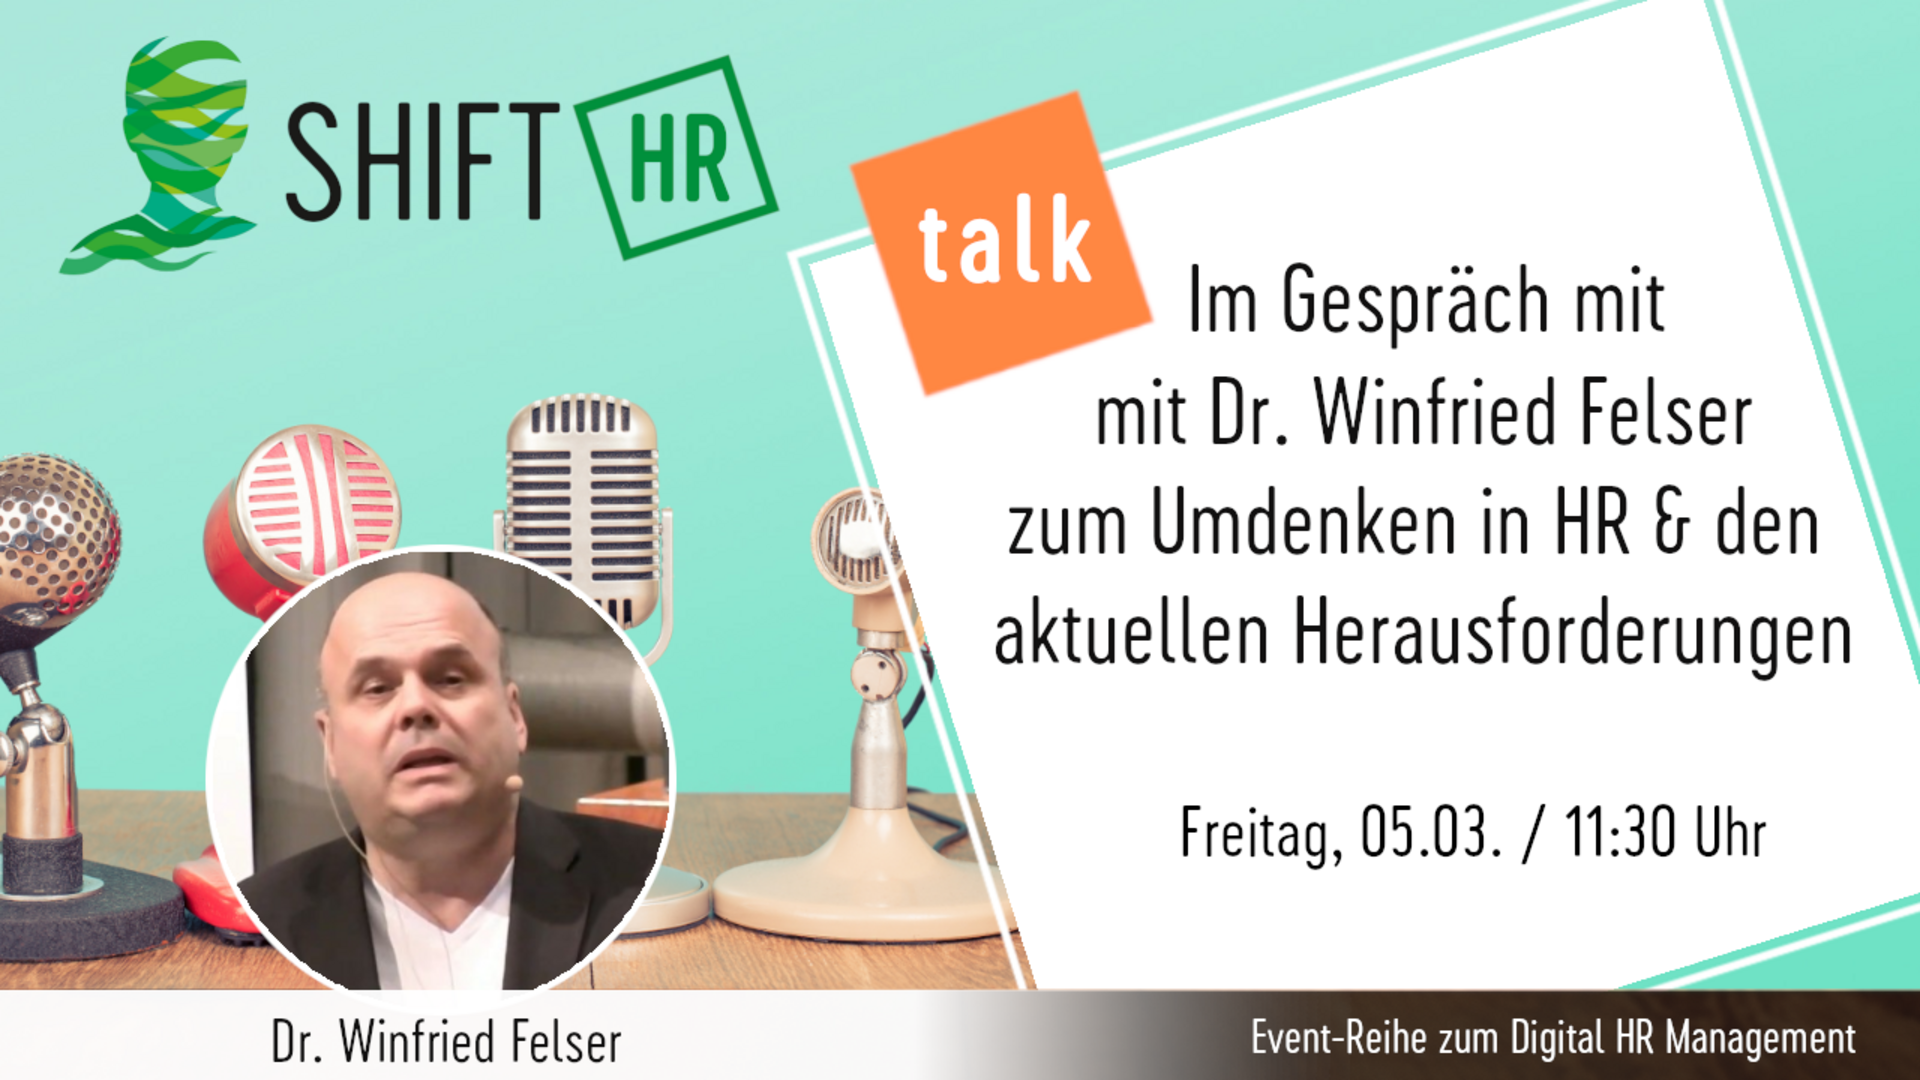 Im Gespräch mit Dr. Winfried Felser zum Umdenken in HR und den Herausforderungen